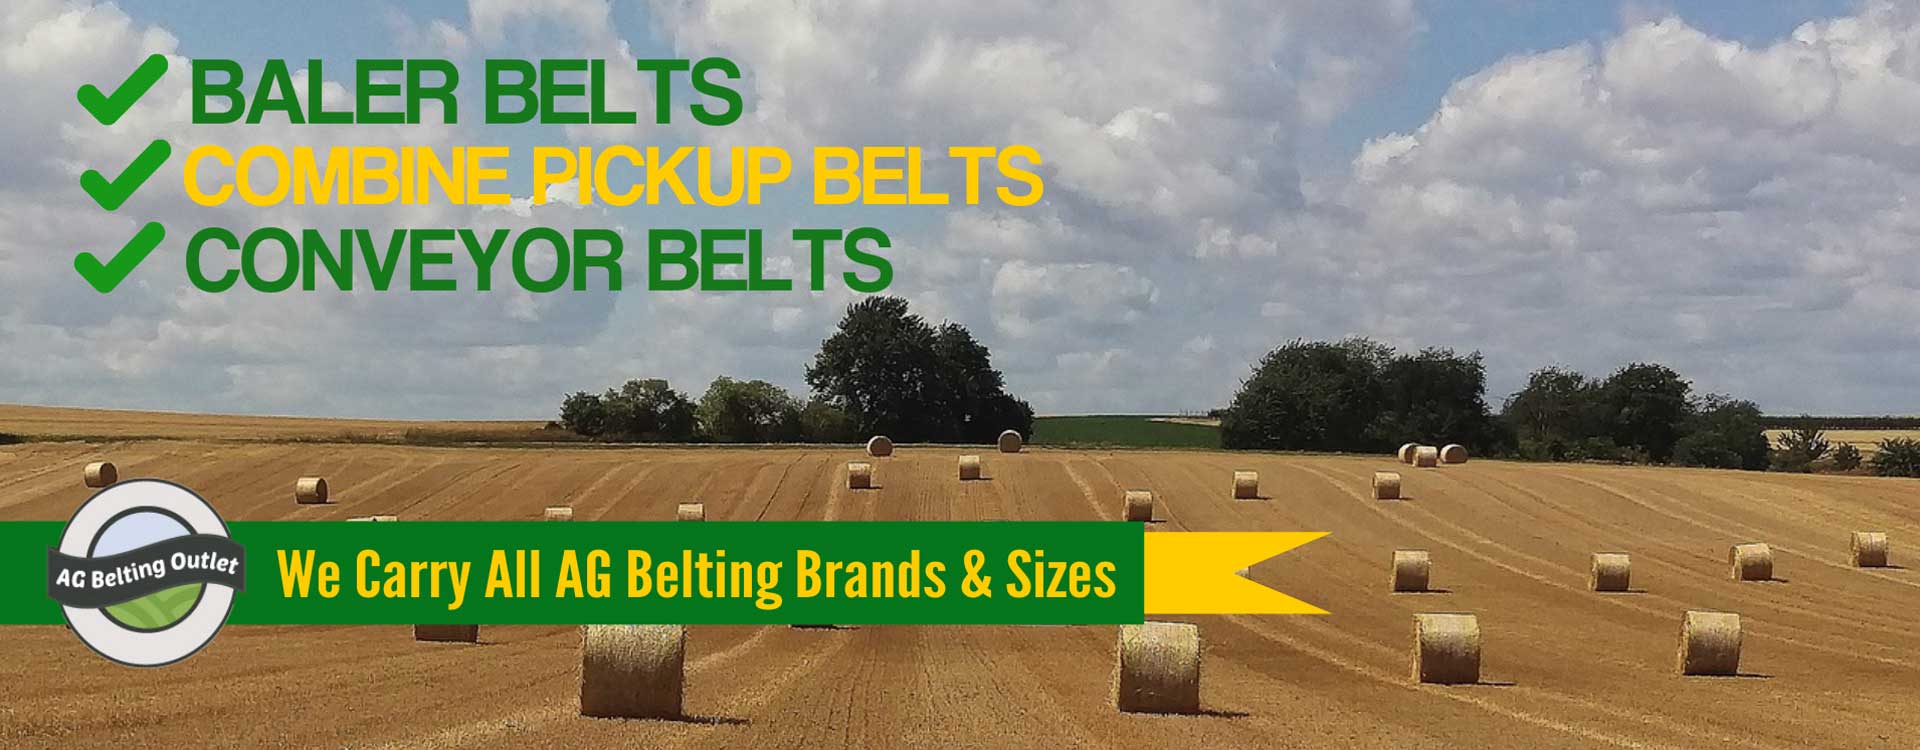 baler belts for sale